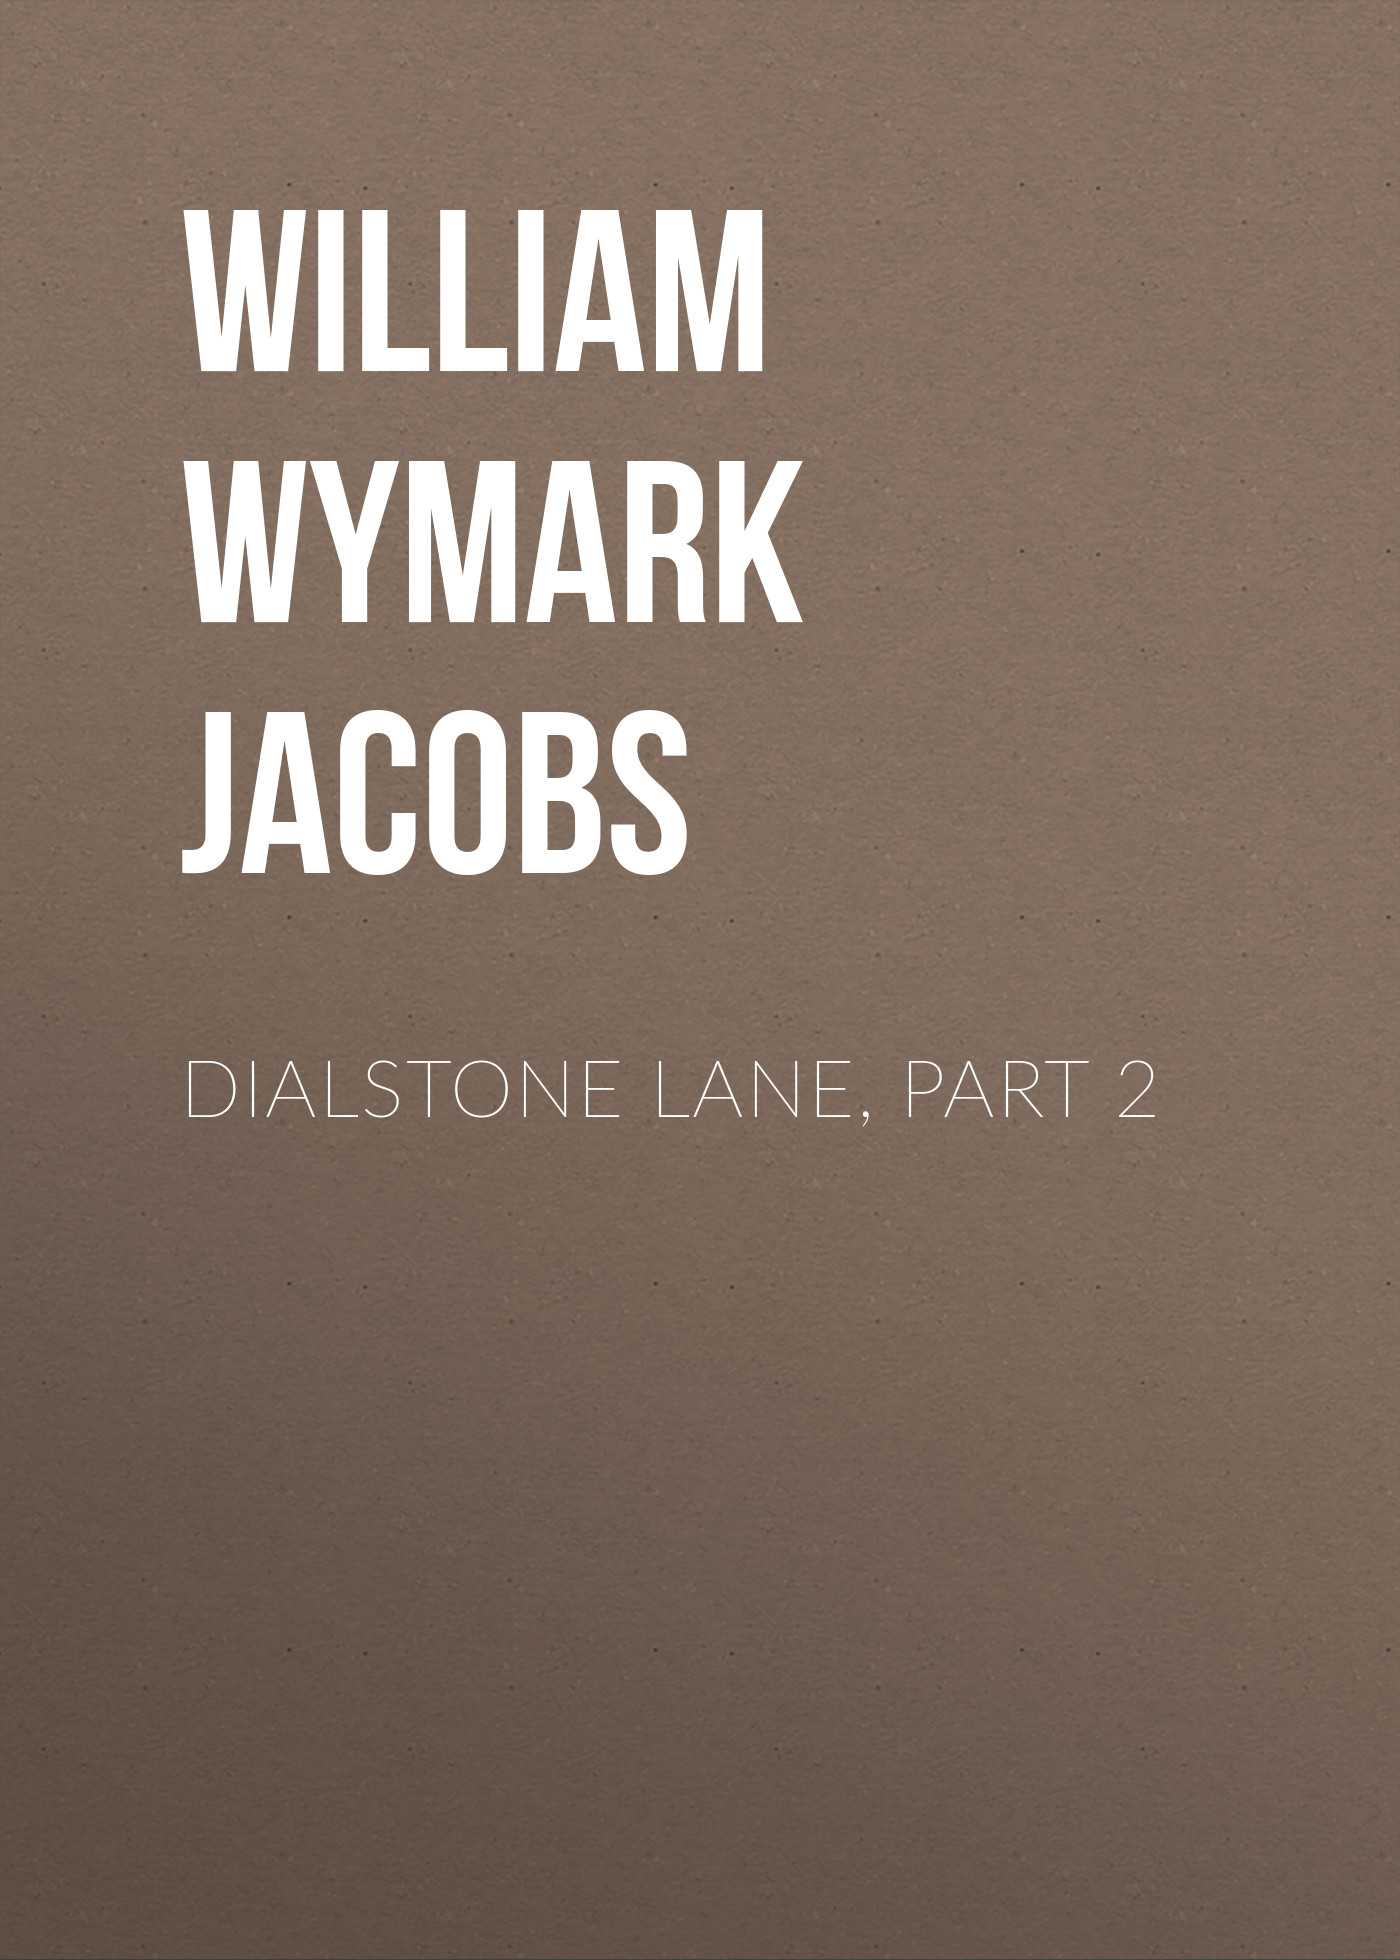 Книга Dialstone Lane, Part 2 из серии , созданная William Wymark Jacobs, может относится к жанру Книги о Путешествиях, Зарубежная старинная литература, Зарубежная классика. Стоимость электронной книги Dialstone Lane, Part 2 с идентификатором 34844254 составляет 0 руб.